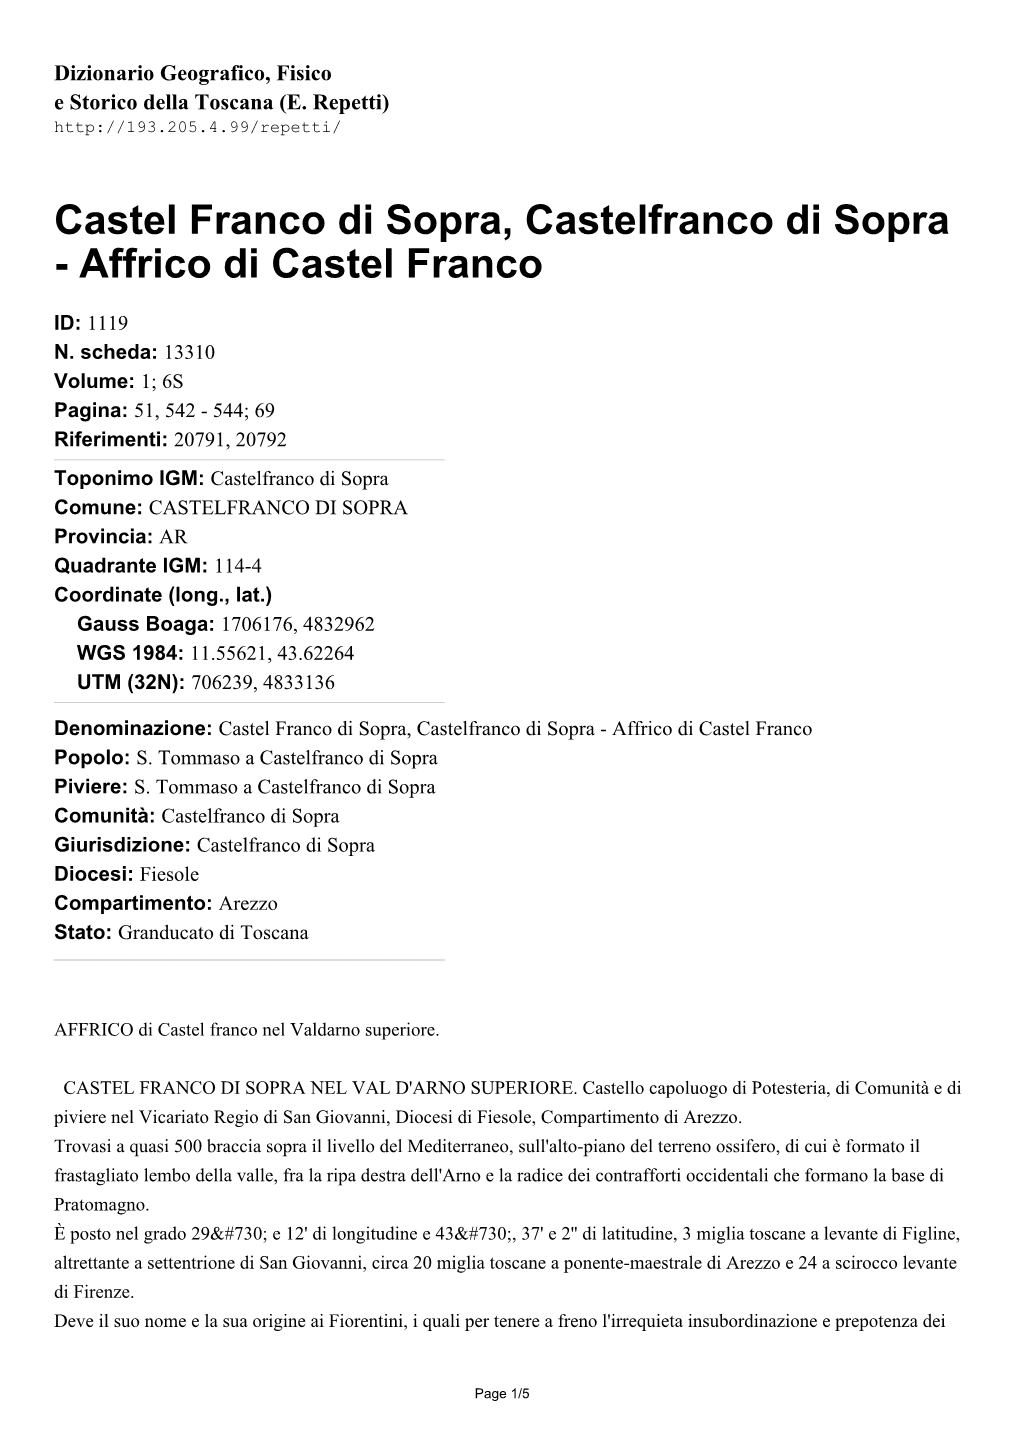 Castel Franco Di Sopra, Castelfranco Di Sopra - Affrico Di Castel Franco